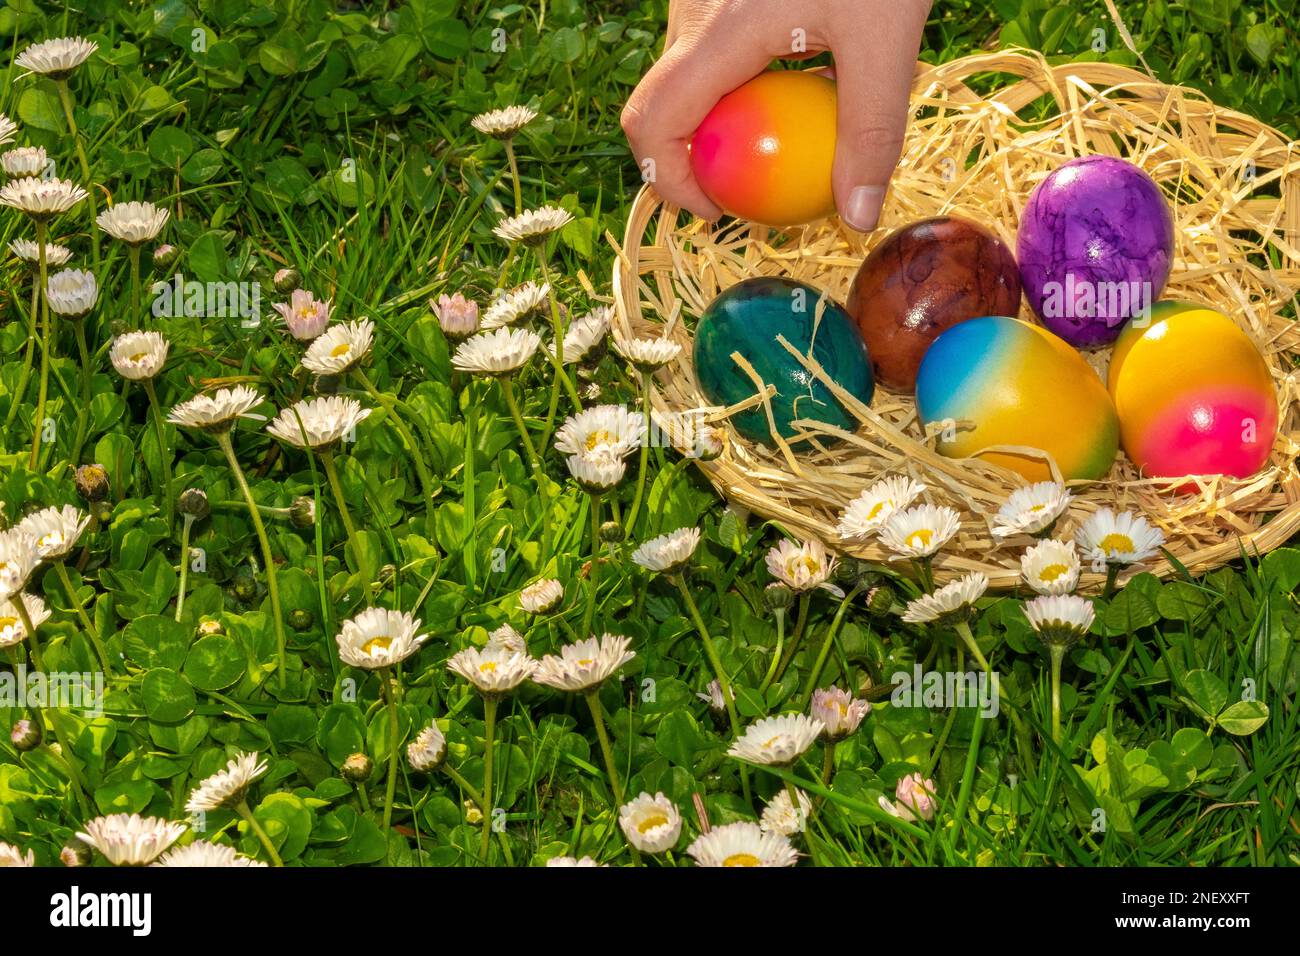 Caccia all'uovo di Pasqua.Collezione di uova colorate da parte dei bambini in un prato con margherite.Pasqua vacanza Tradition.Child raccogliere uova dipinte .Primavera religiosa Foto Stock